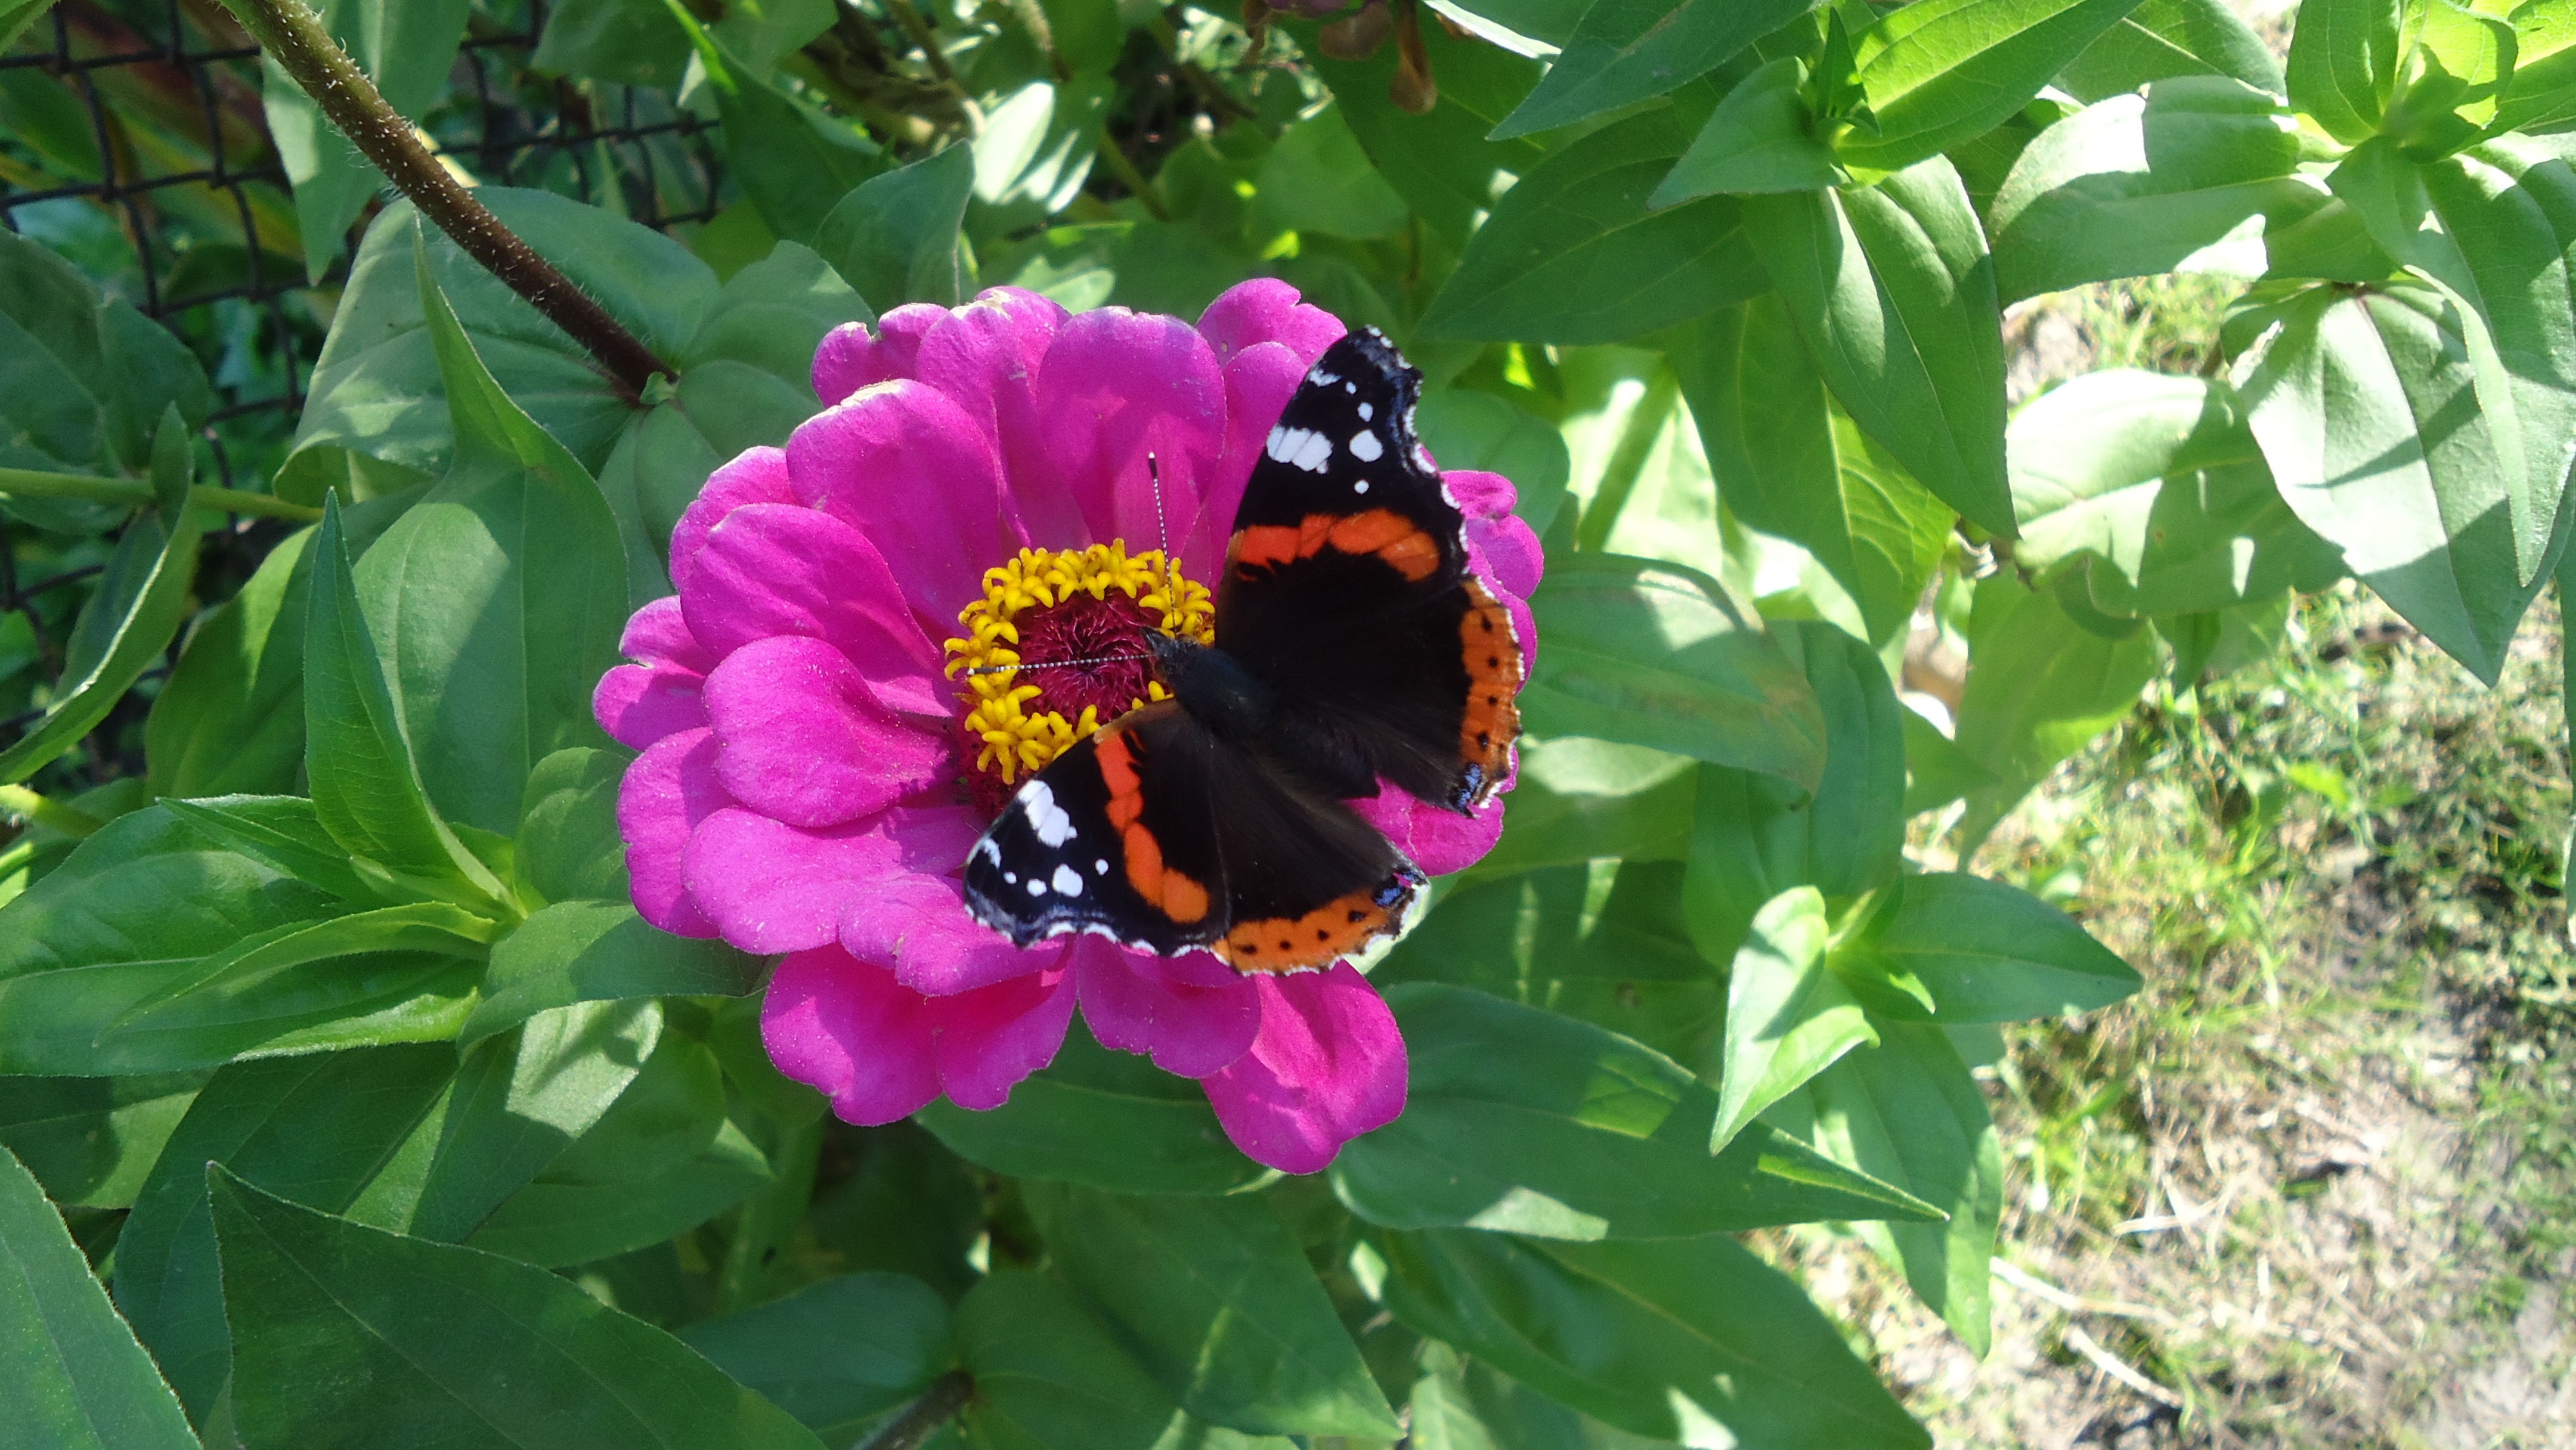 Скачать обои бесплатно Бабочка, Животные, Цветок, Лето картинка на рабочий стол ПК